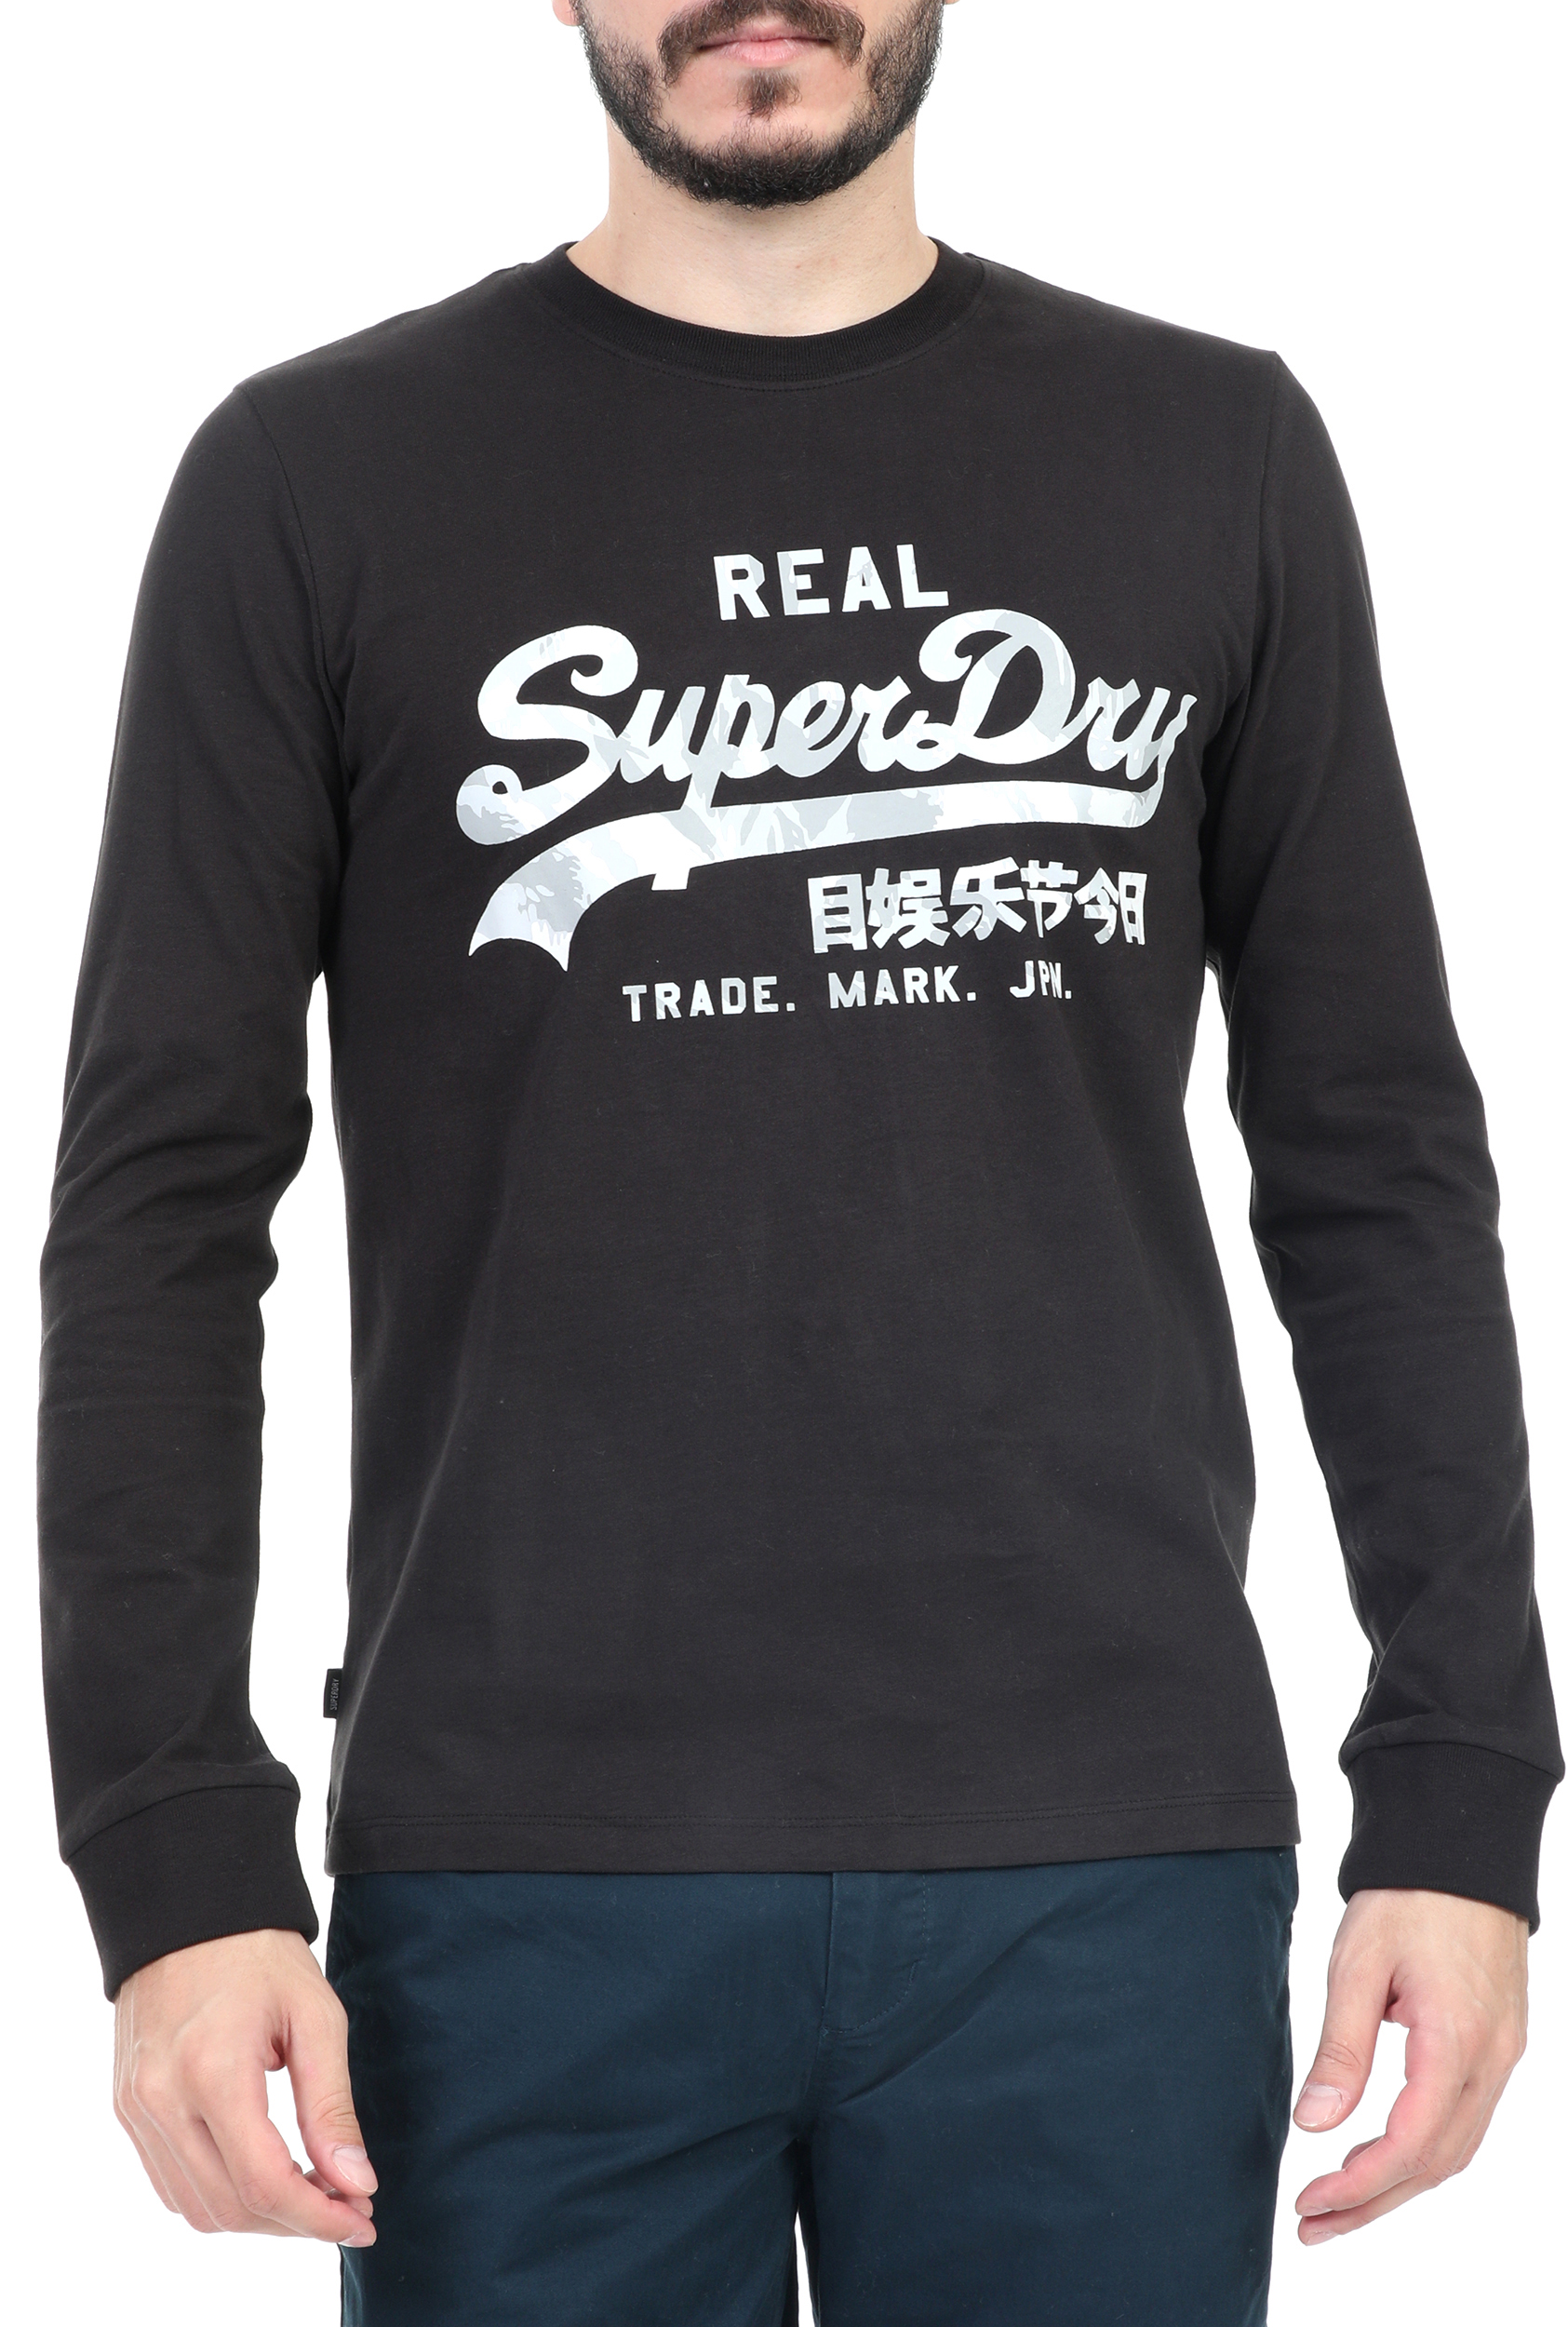 Ανδρικά/Ρούχα/Μπλούζες/Μακρυμάνικες SUPERDRY - Ανδρική μακρυμάνικη μπλούζα SUPERDRY μαύρη